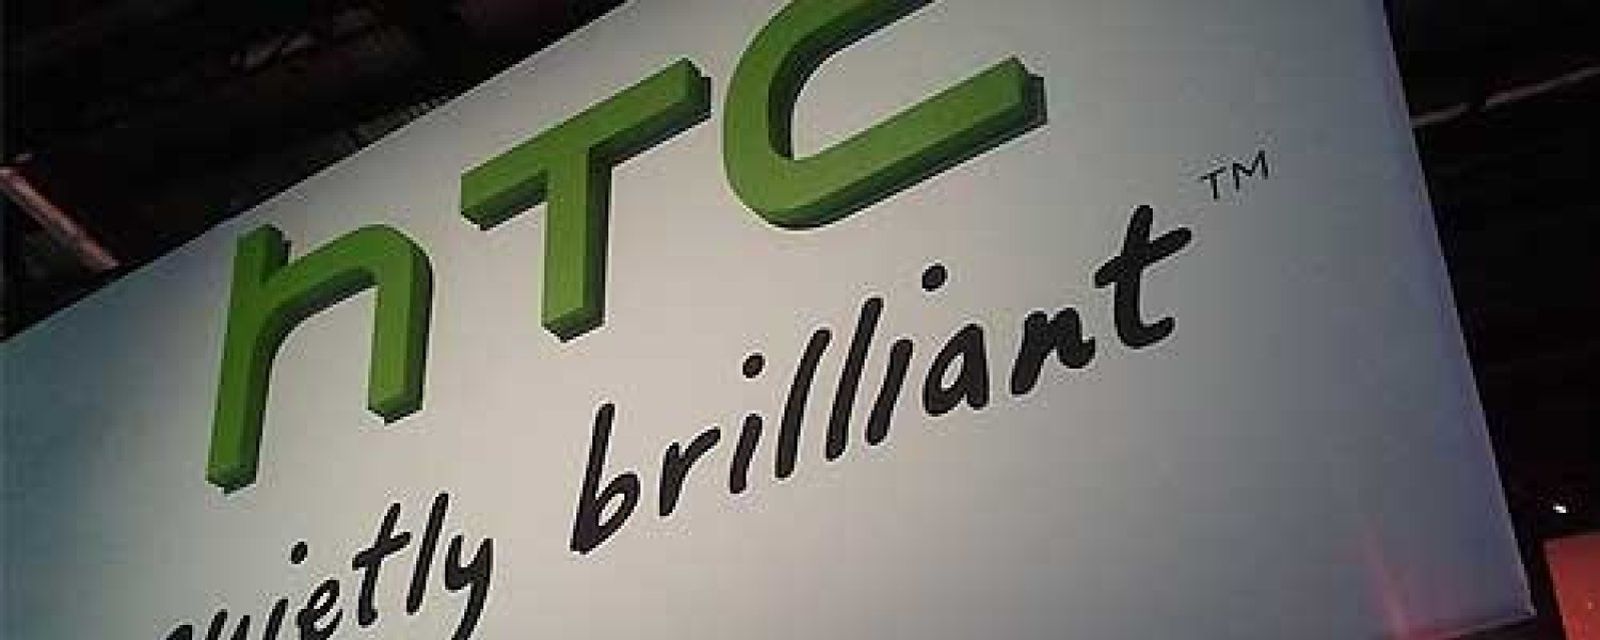 Foto: HTC prepara un 'tablet' 'excepcional'